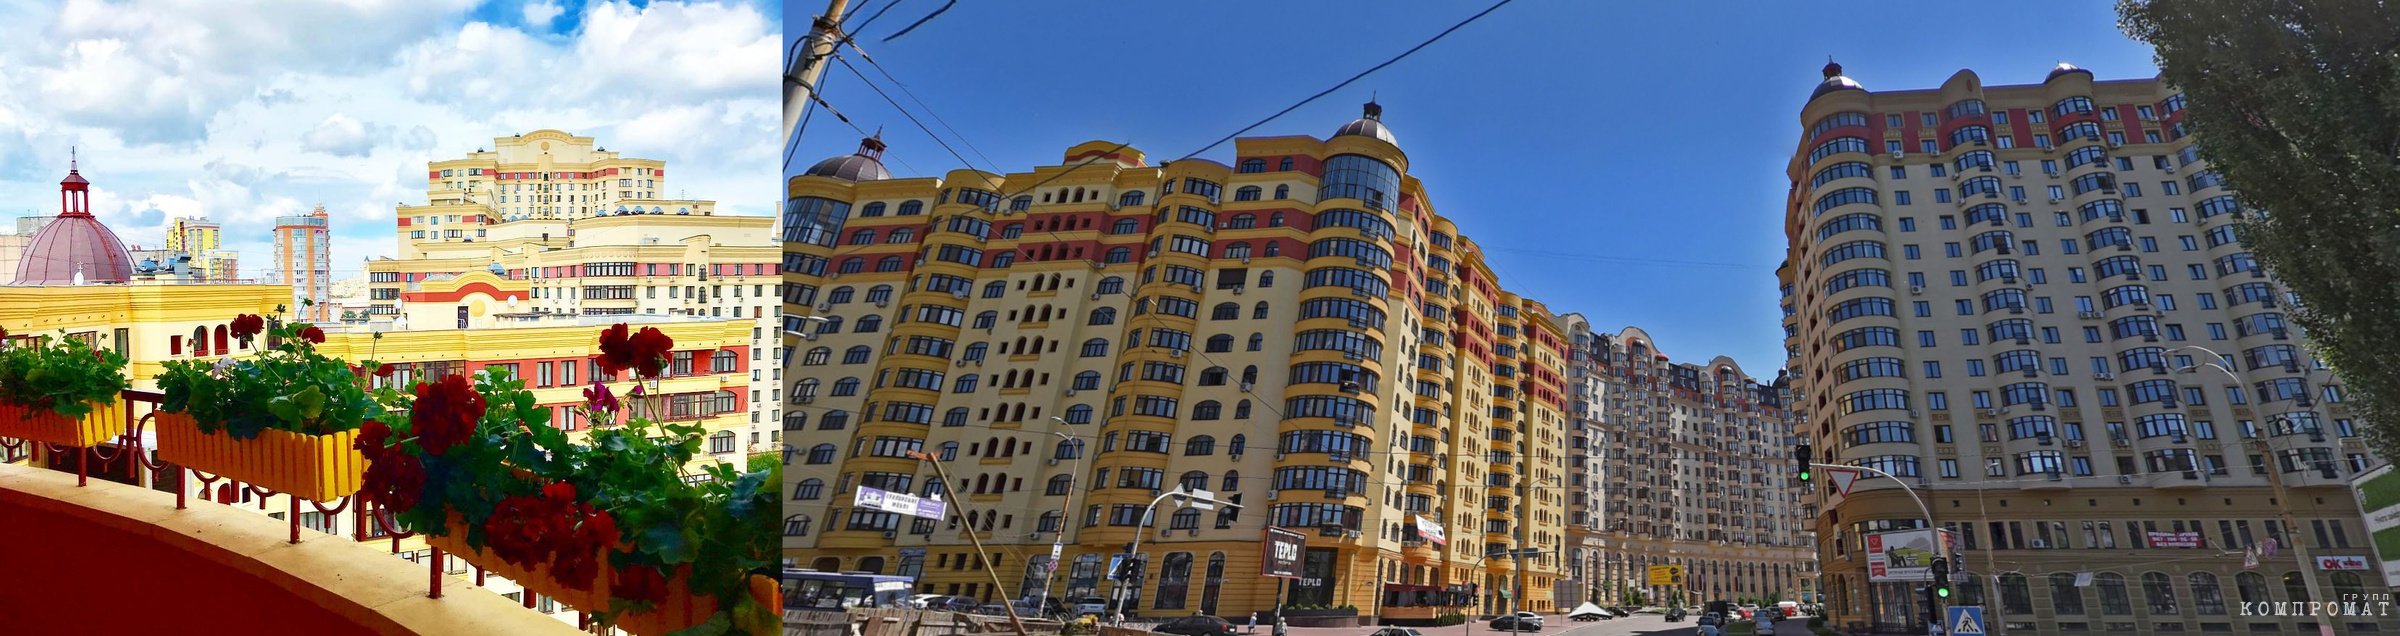 ЖК "Златоустовская", цена квартир доходит до $400 тыс.